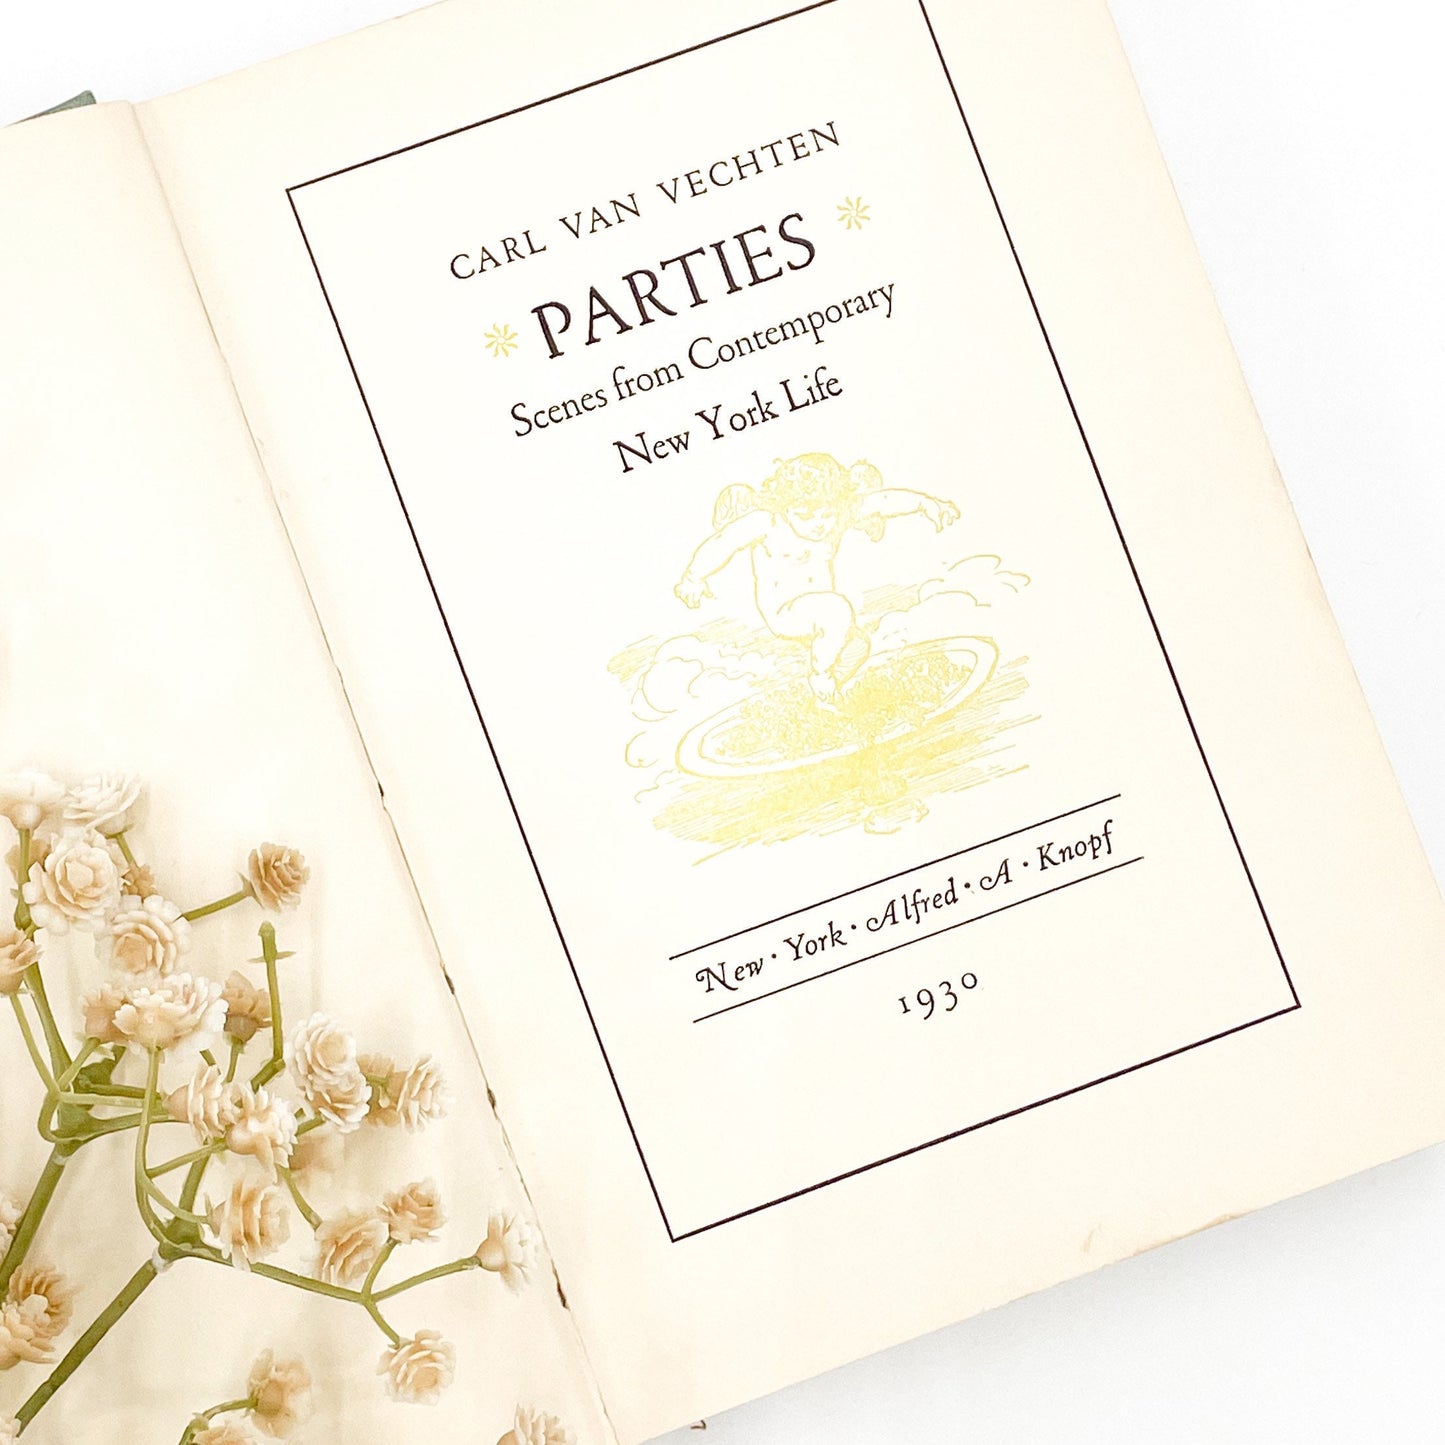 Beautiful Vintage Book, Parties by Carl Van Vechten